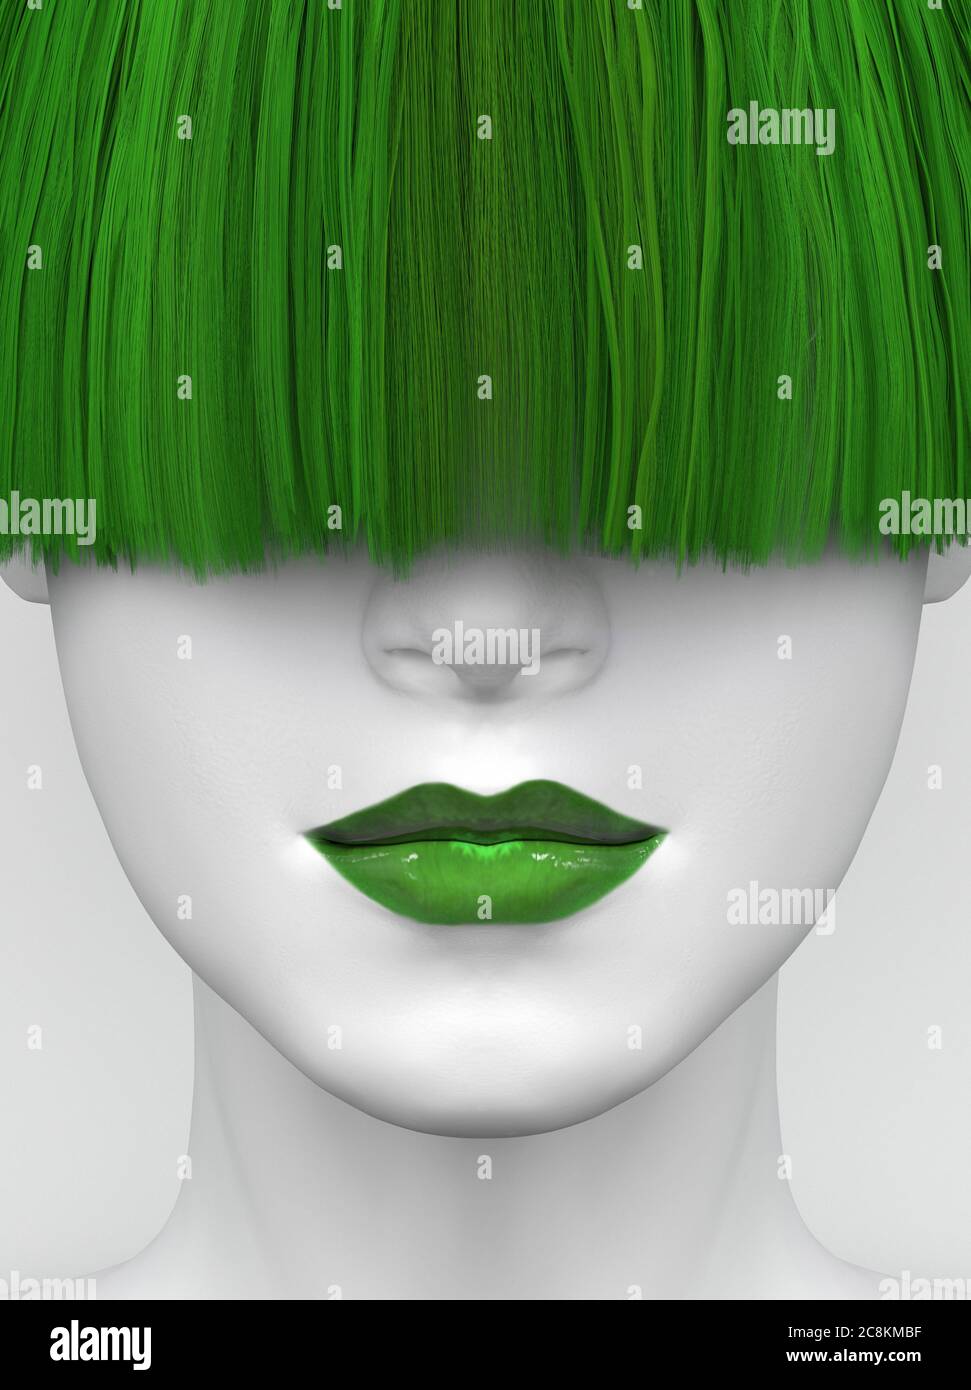 Cara blanca femenina con labios verdes y largas brangas verdes que cubren sus ojos. Cabello y maquillaje de colores brillantes. Ilustración conceptual creativa. Renderizar en 3D Foto de stock